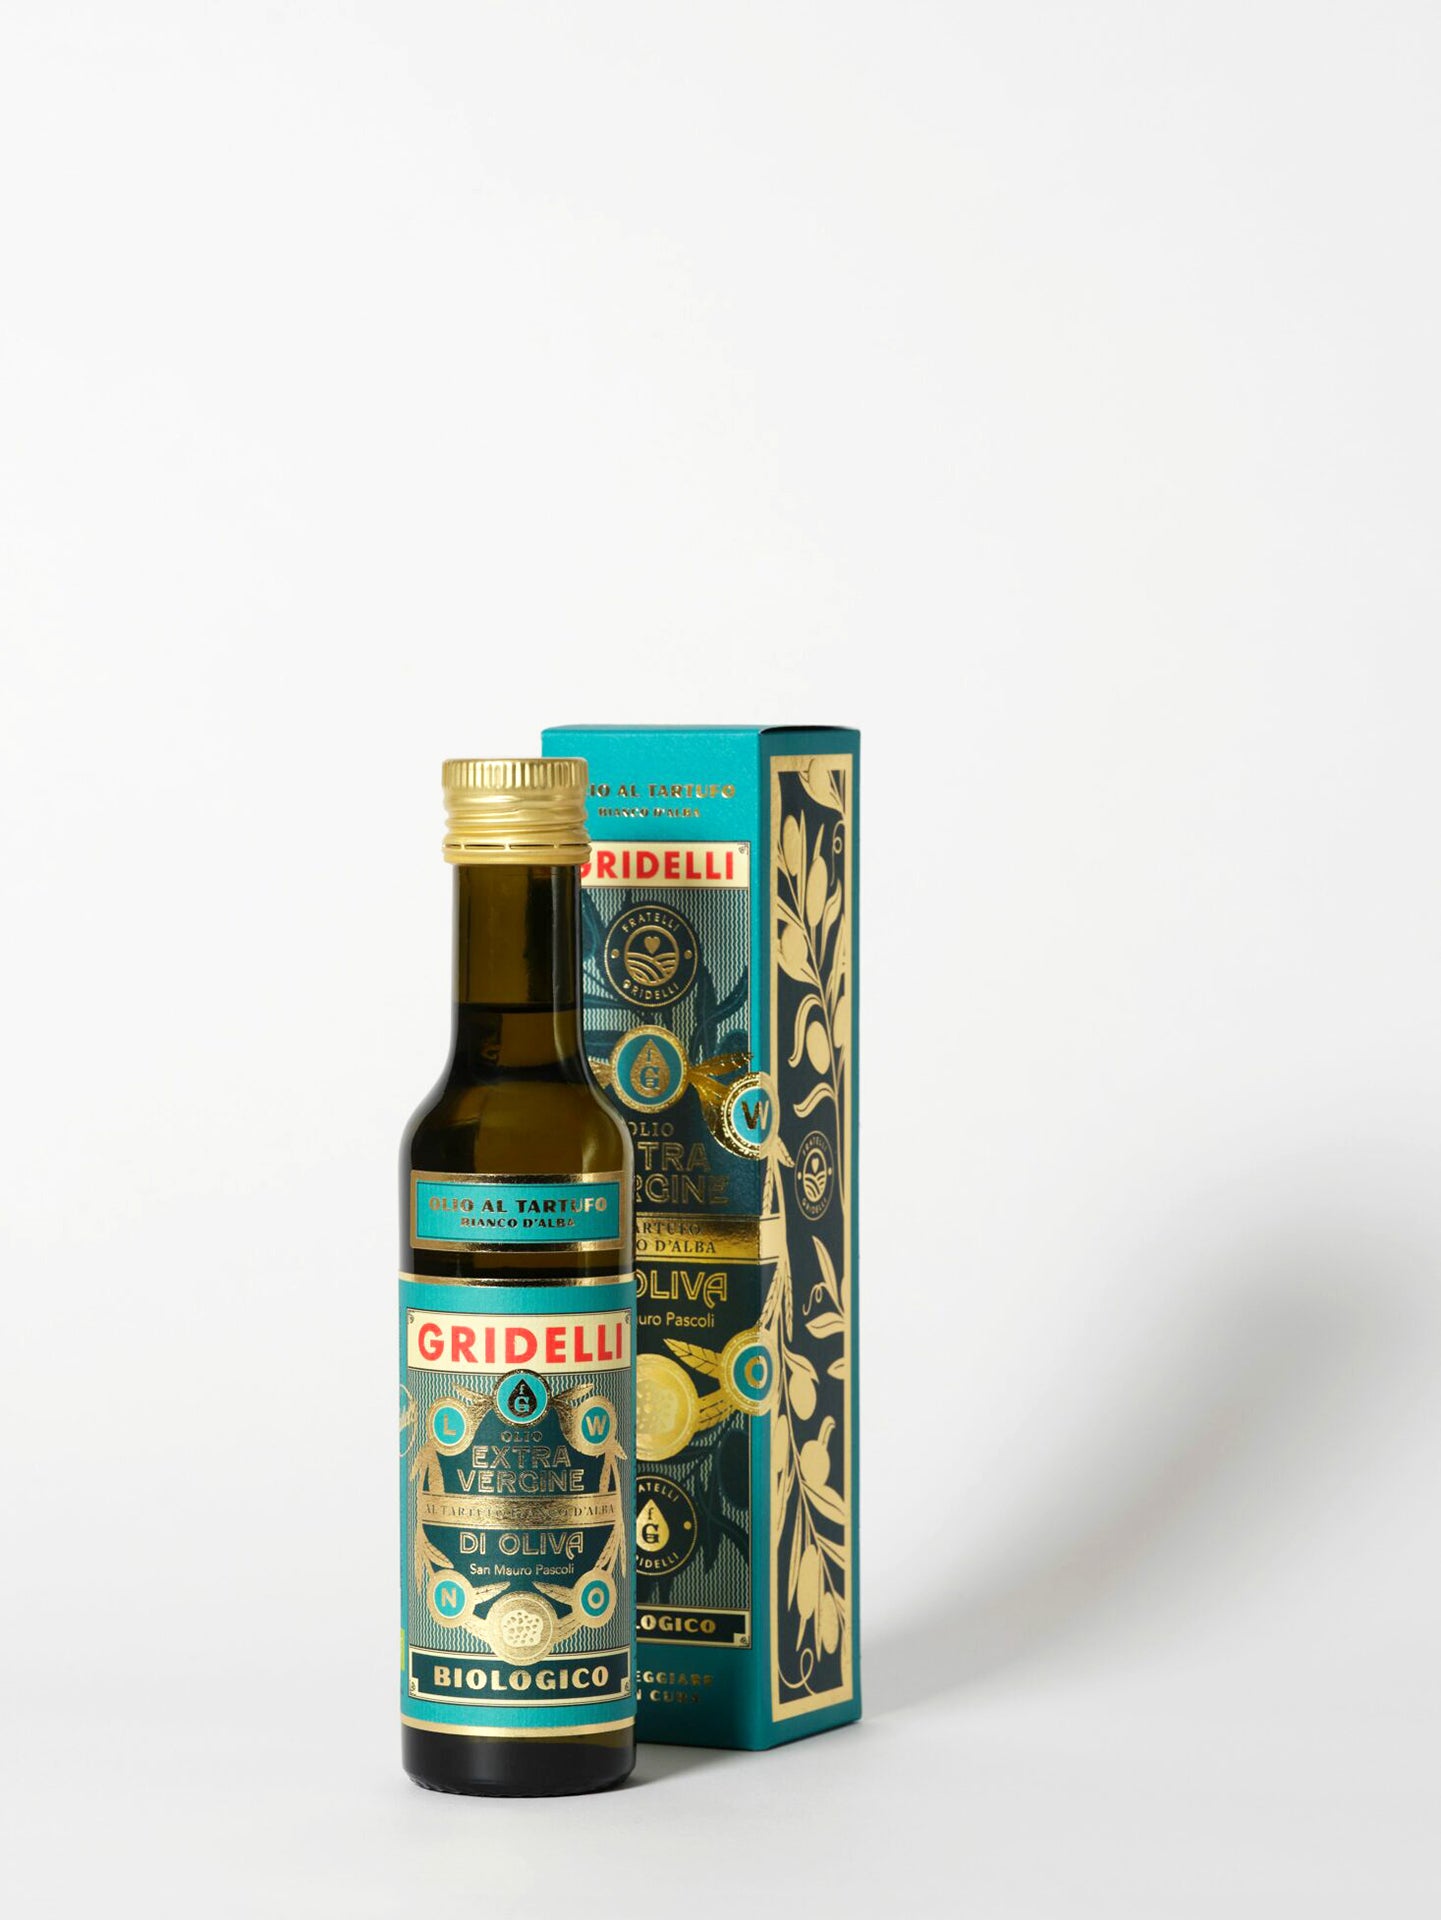 Truffel Extra Virgin Olive Oil Al Tartufo Bianco D ́alba (250 ml)